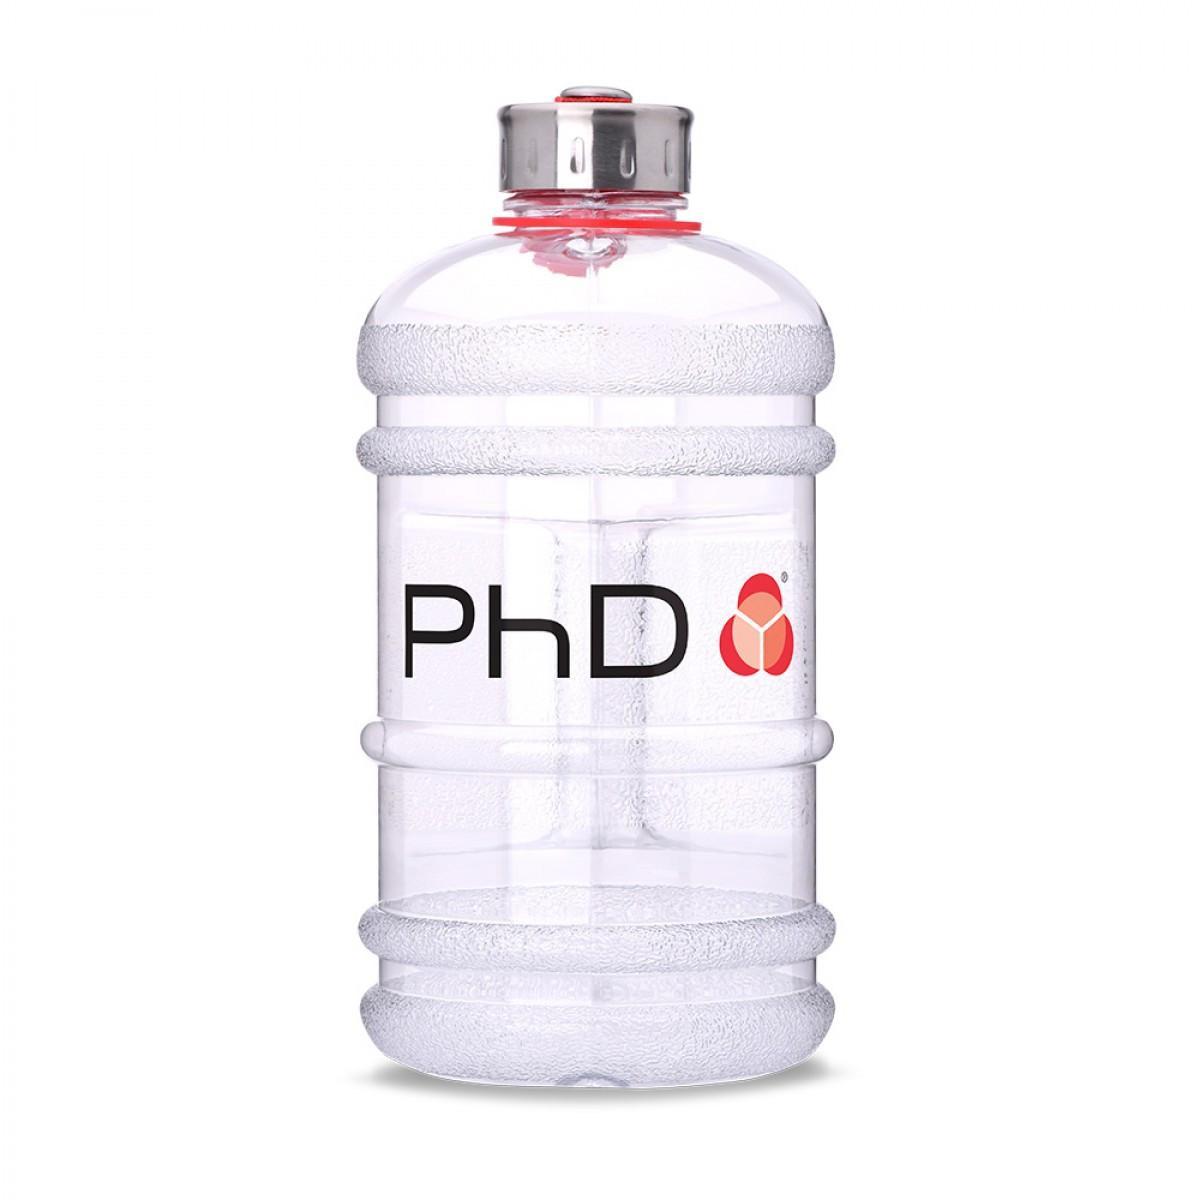 בקבוק אידיאלי למתאמנים - PhD